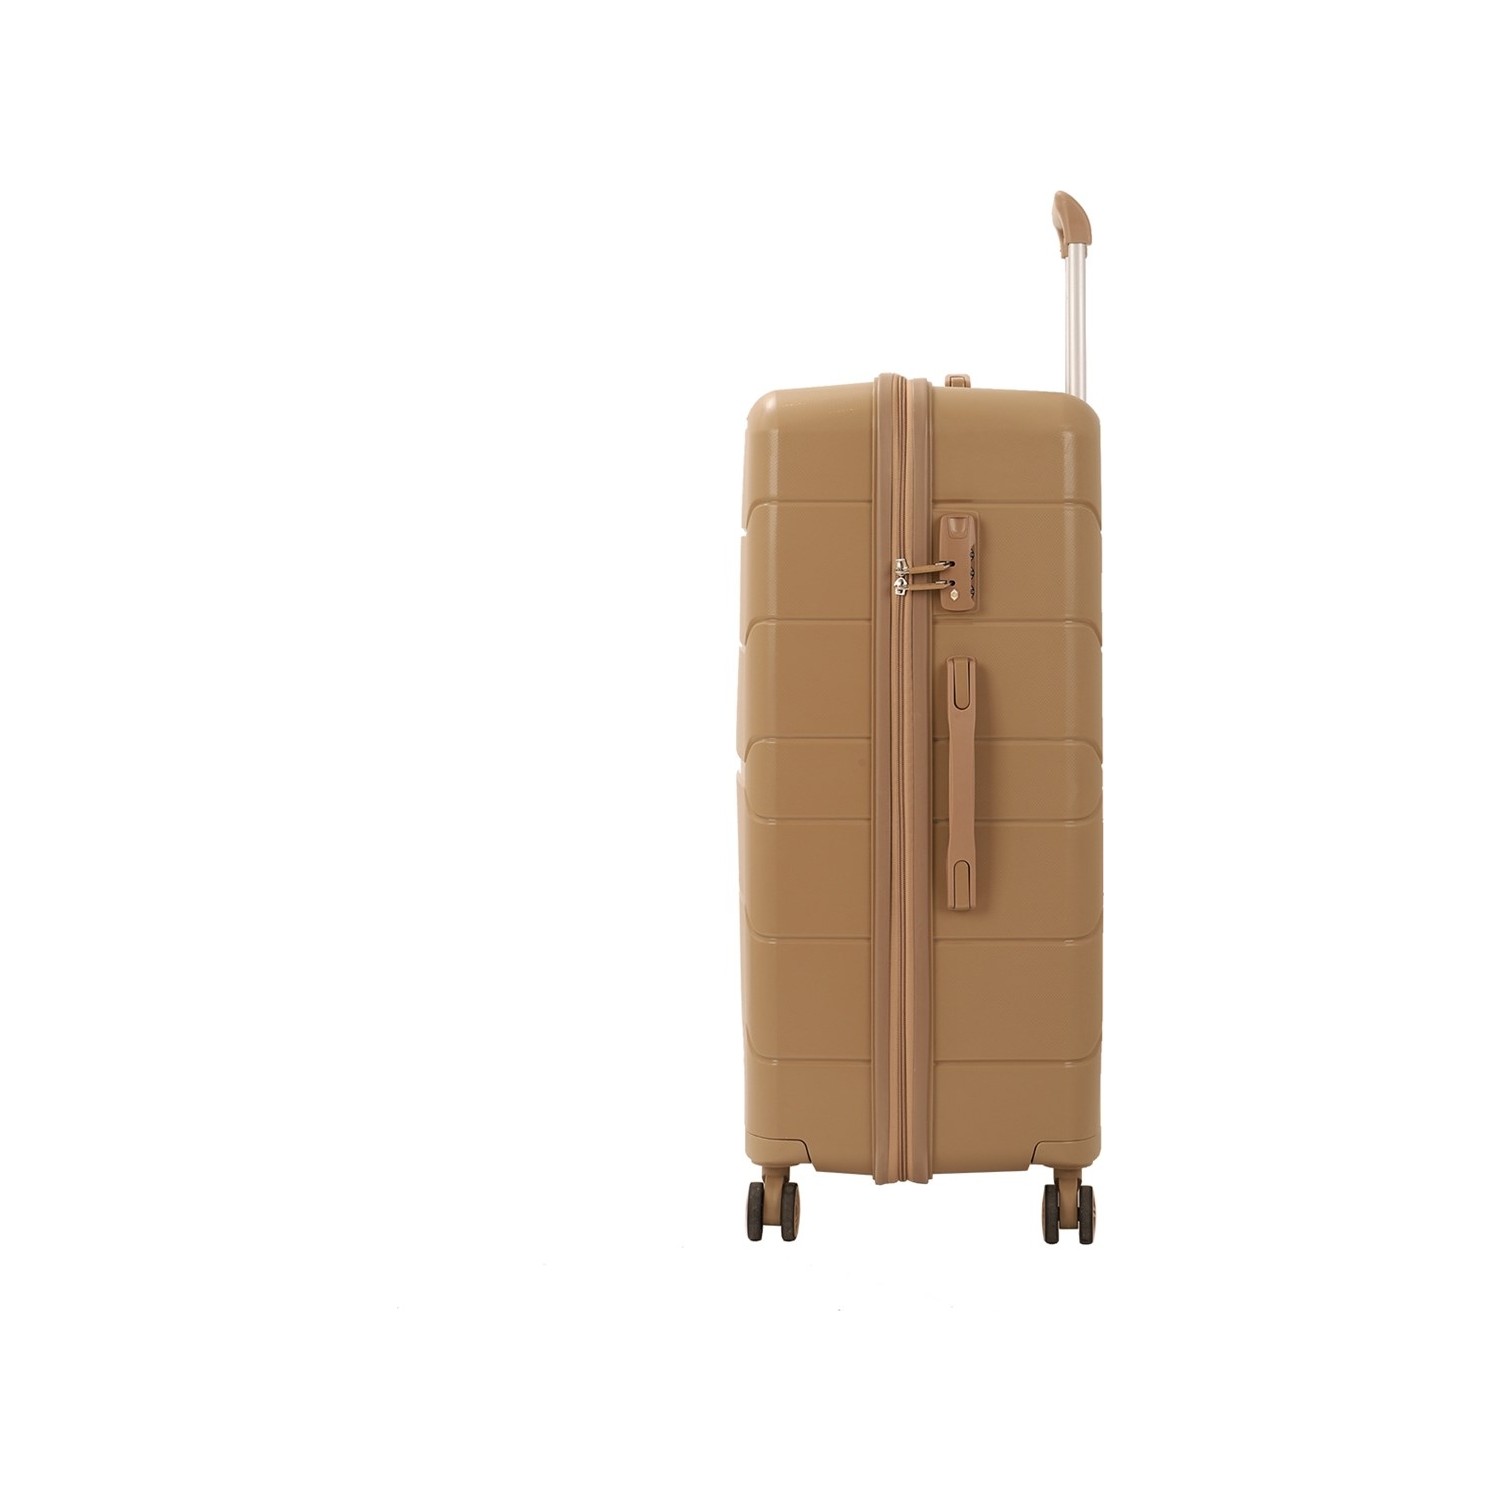 Большой чемодан из полипропилена MCS V366 L CHAMPAGE! Для 23 кг! - 3